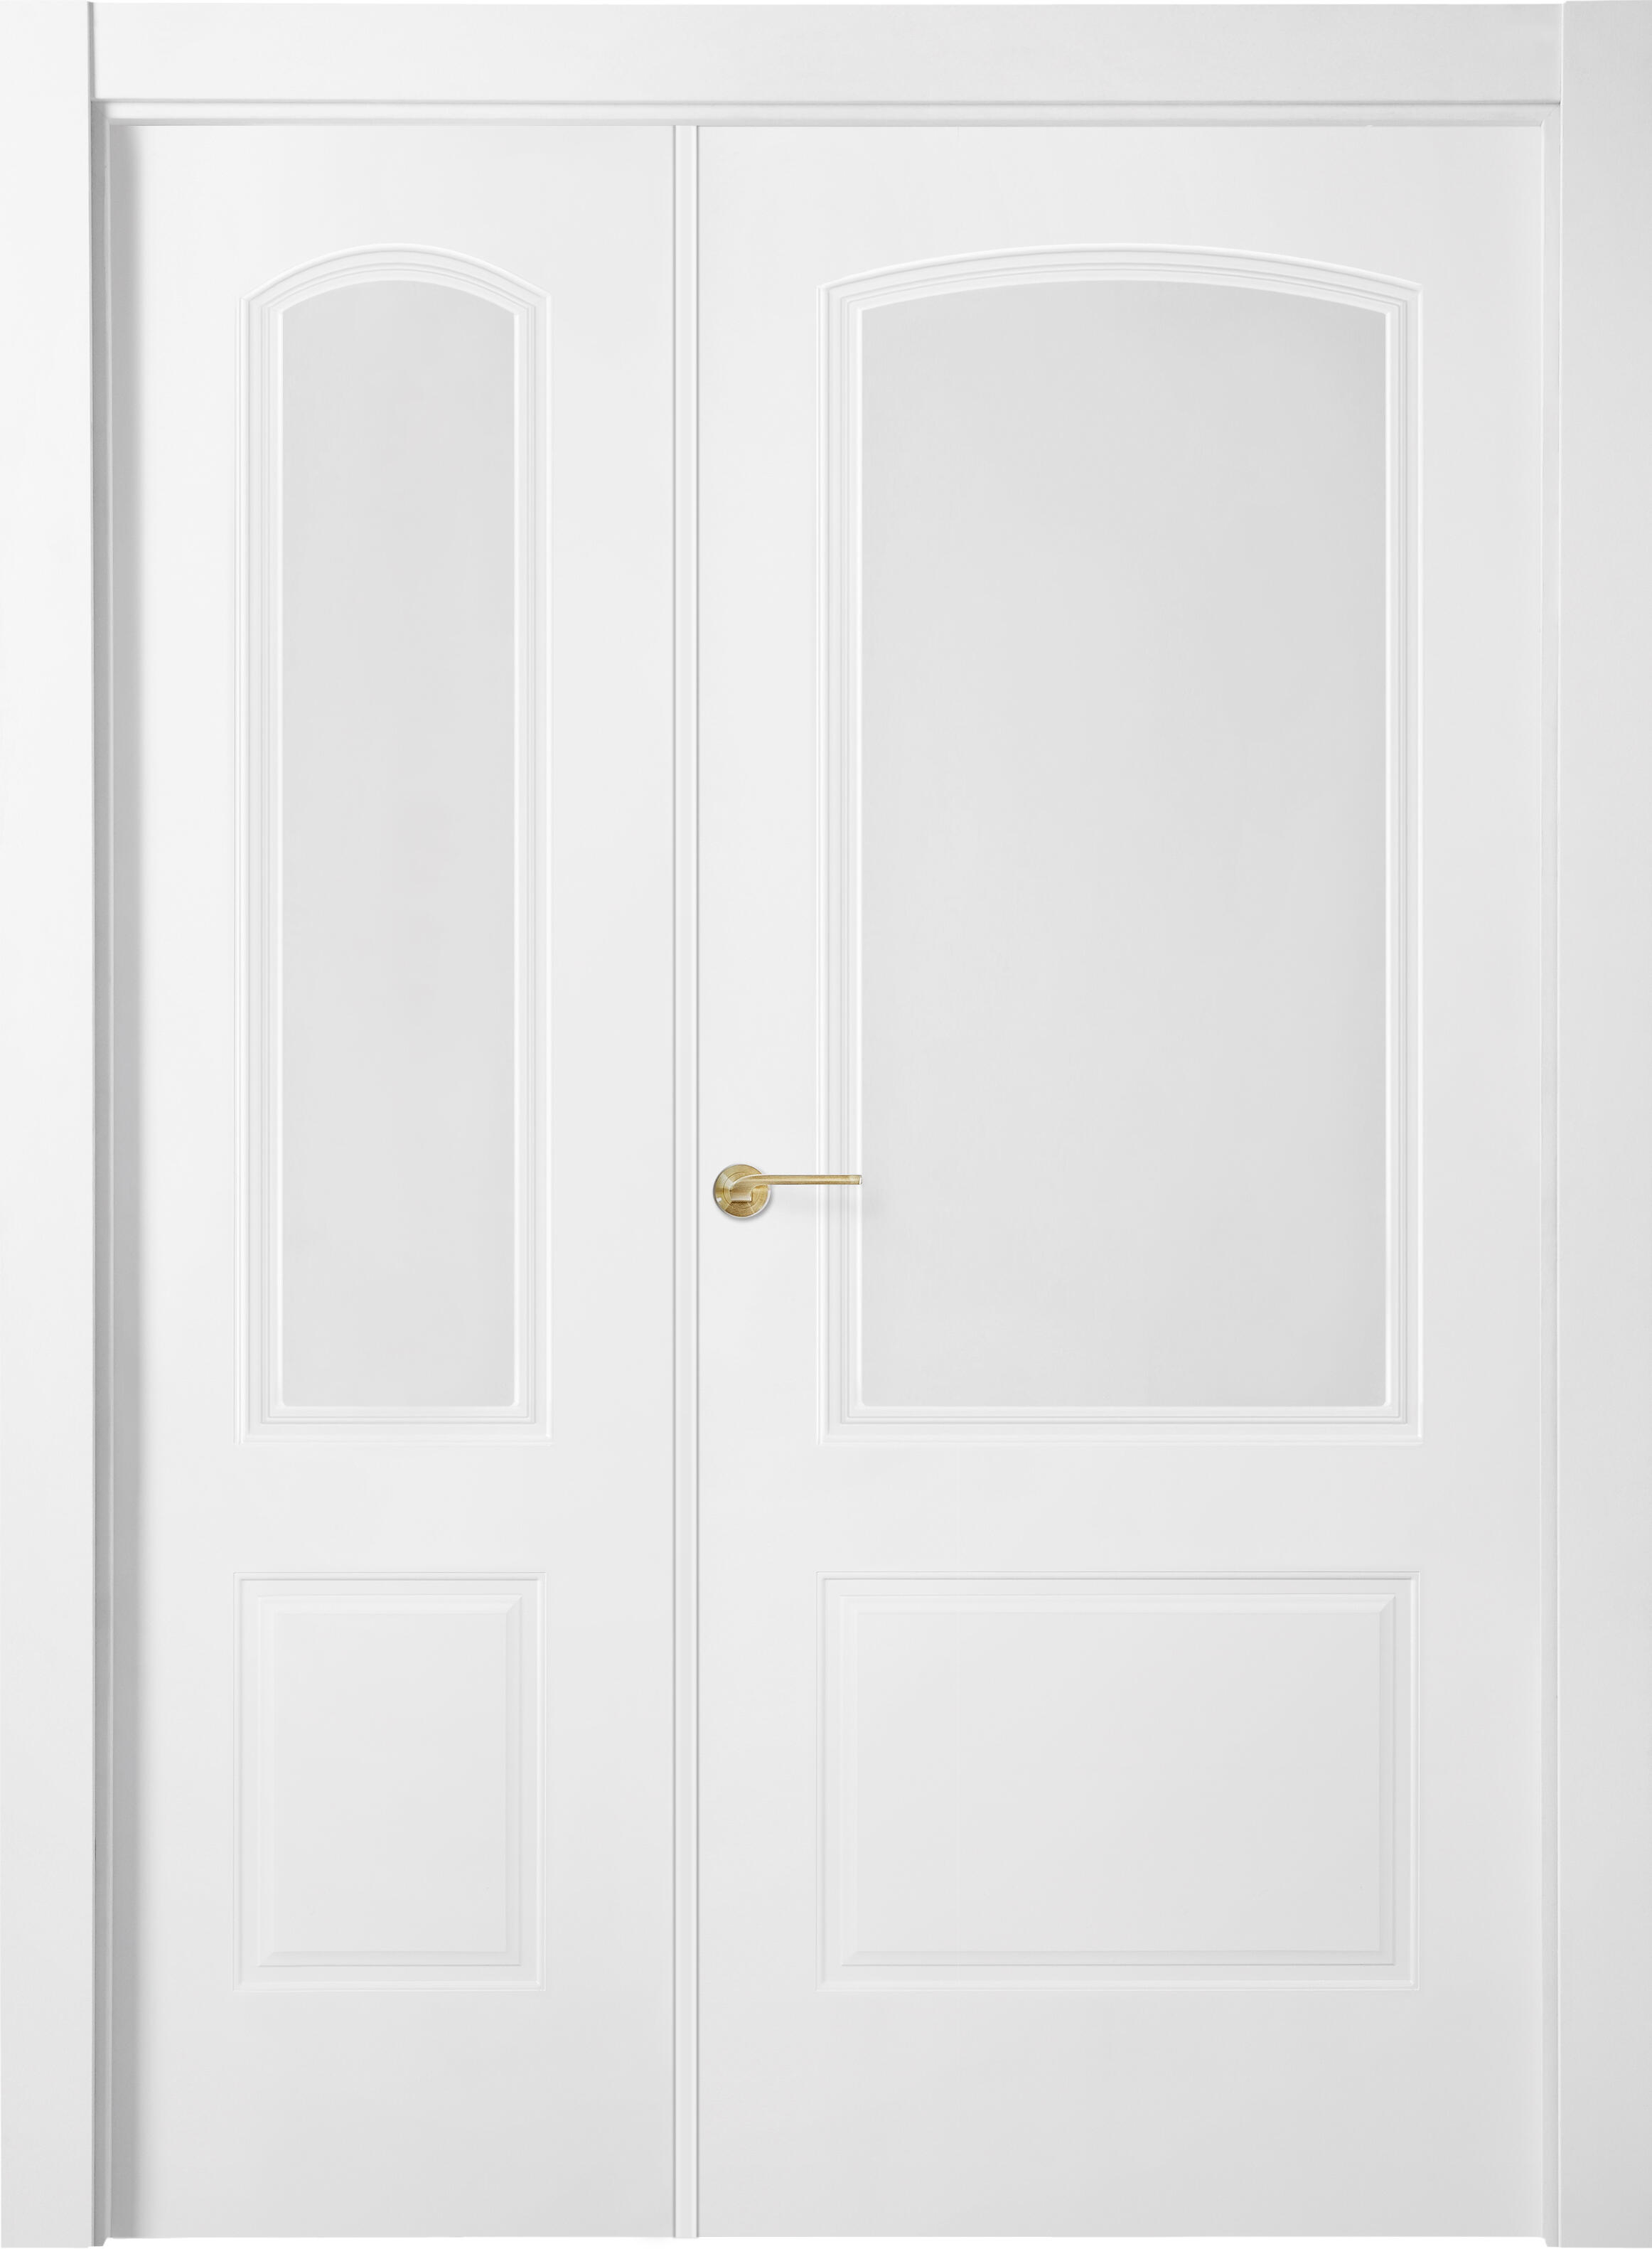 Puerta berlin plus blanco apertura derecha con cristal 105cm